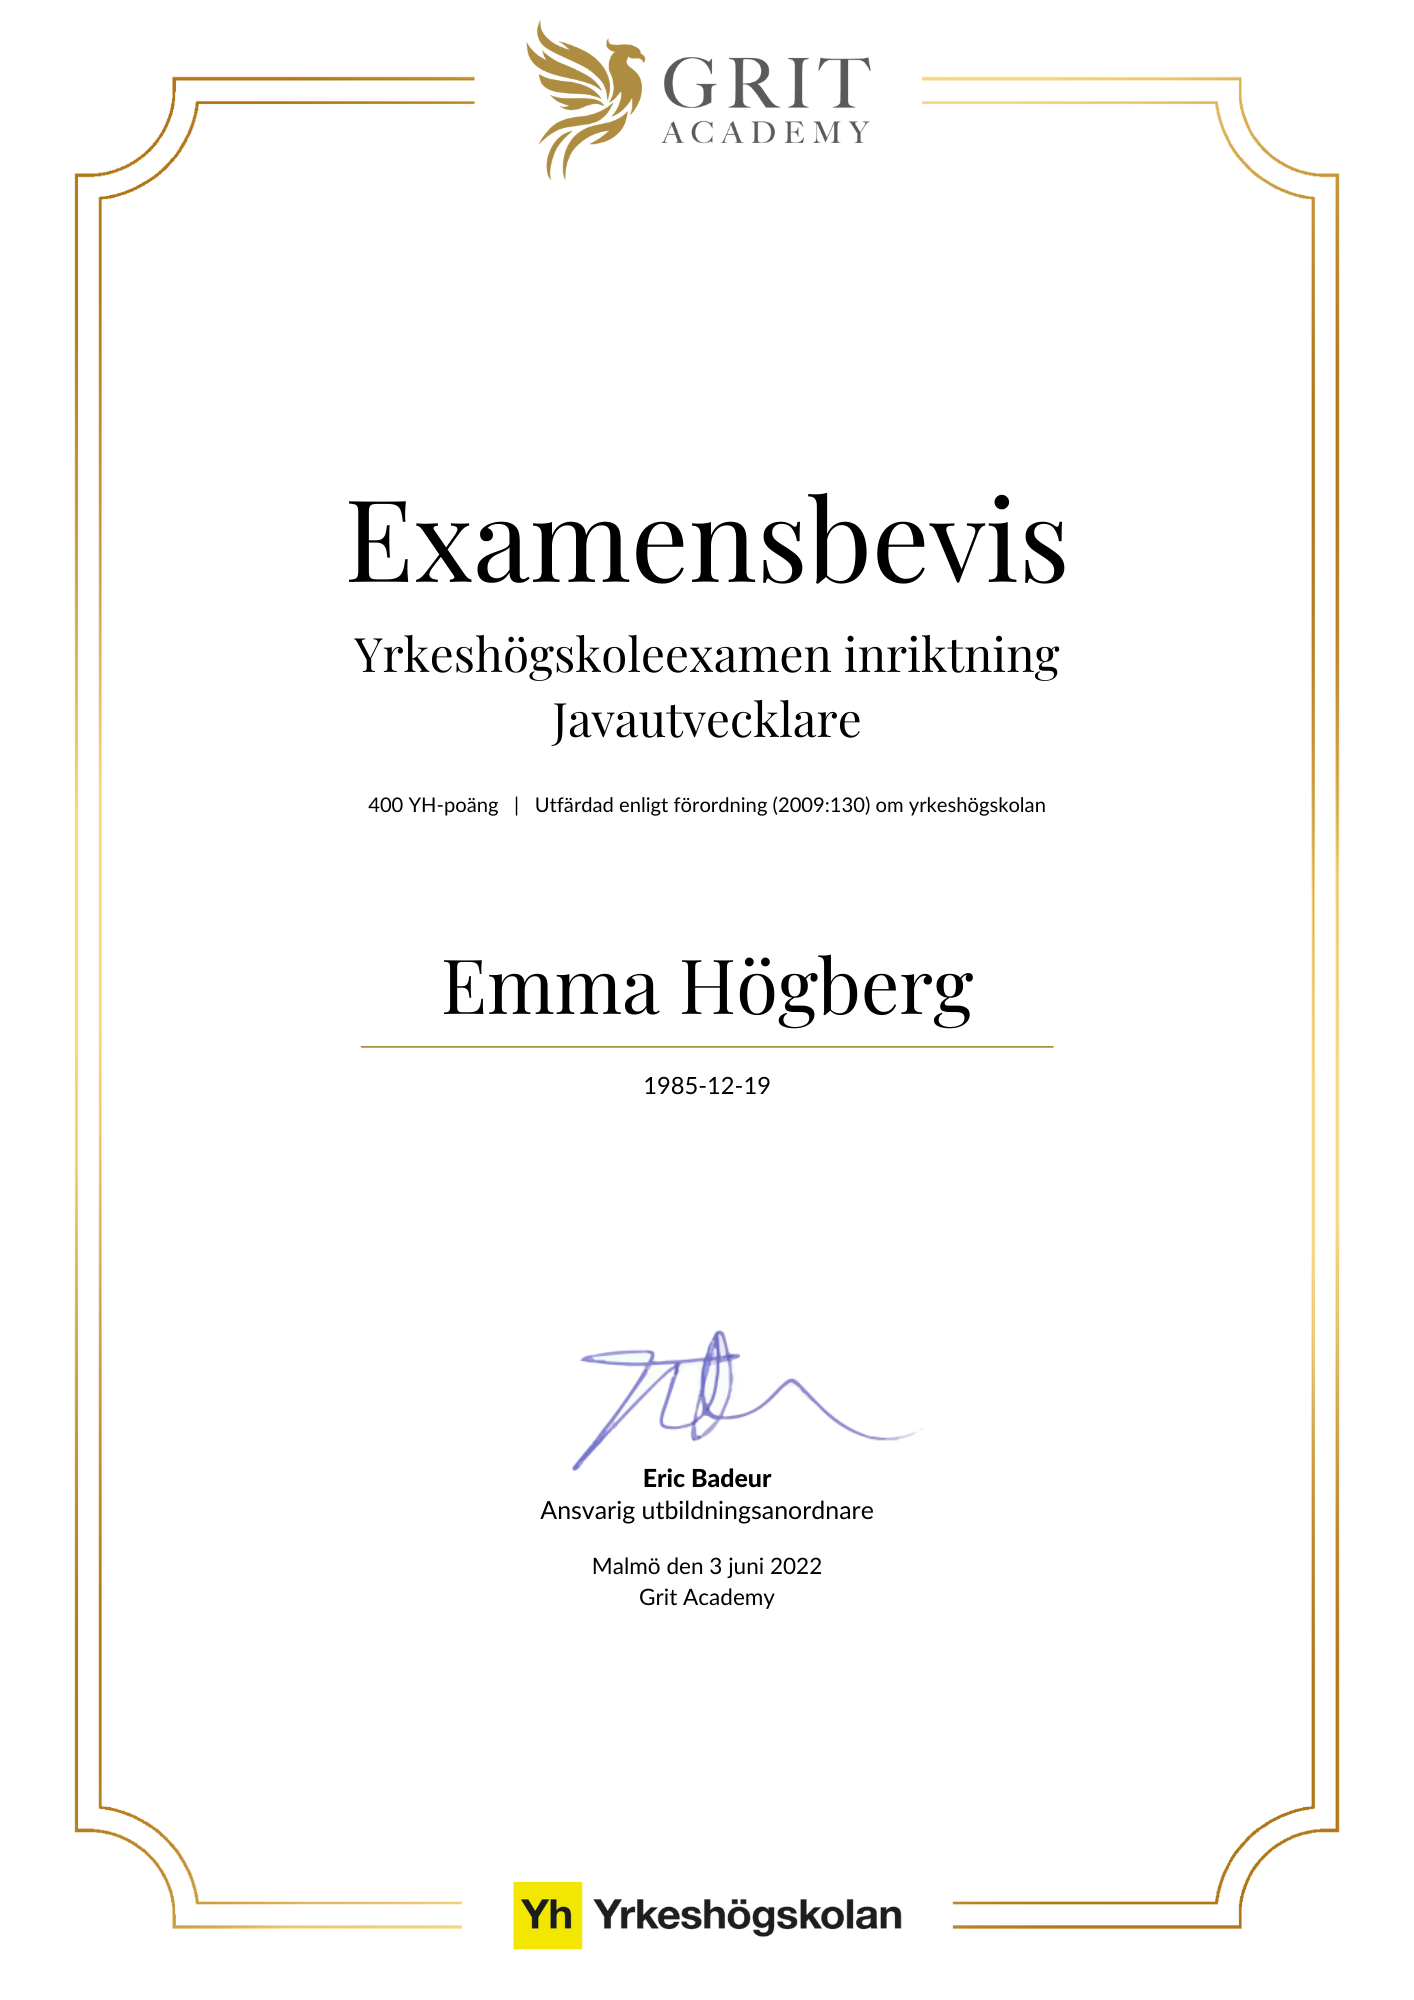 Examensbevis Emma Högberg